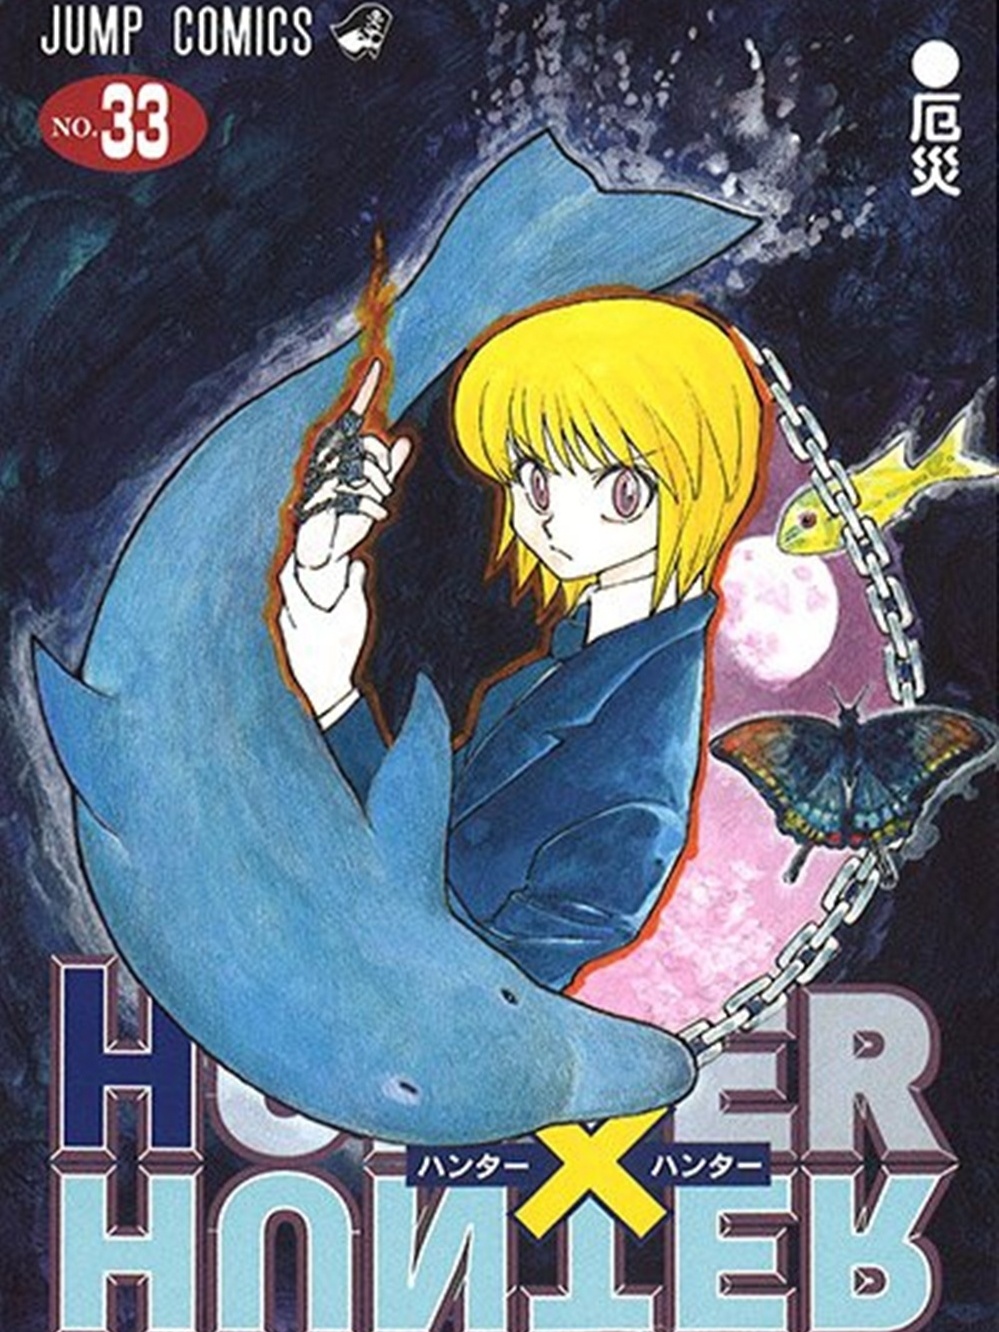 Hunter x Hunter: criador do mangá trabalha em novos capítulos após hiato